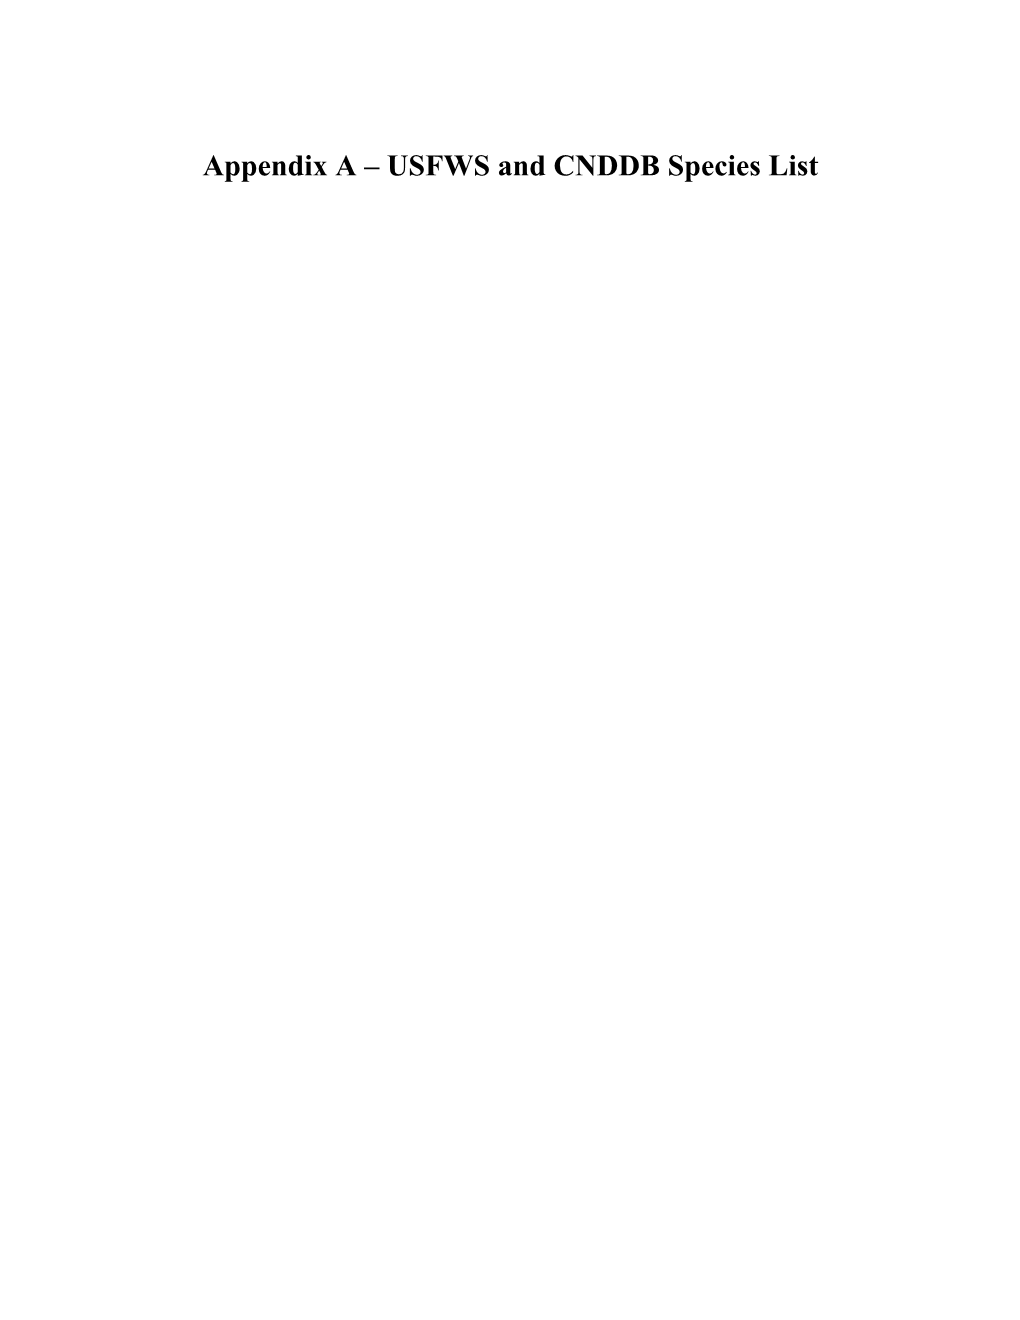 Appendix a – USFWS and CNDDB Species List